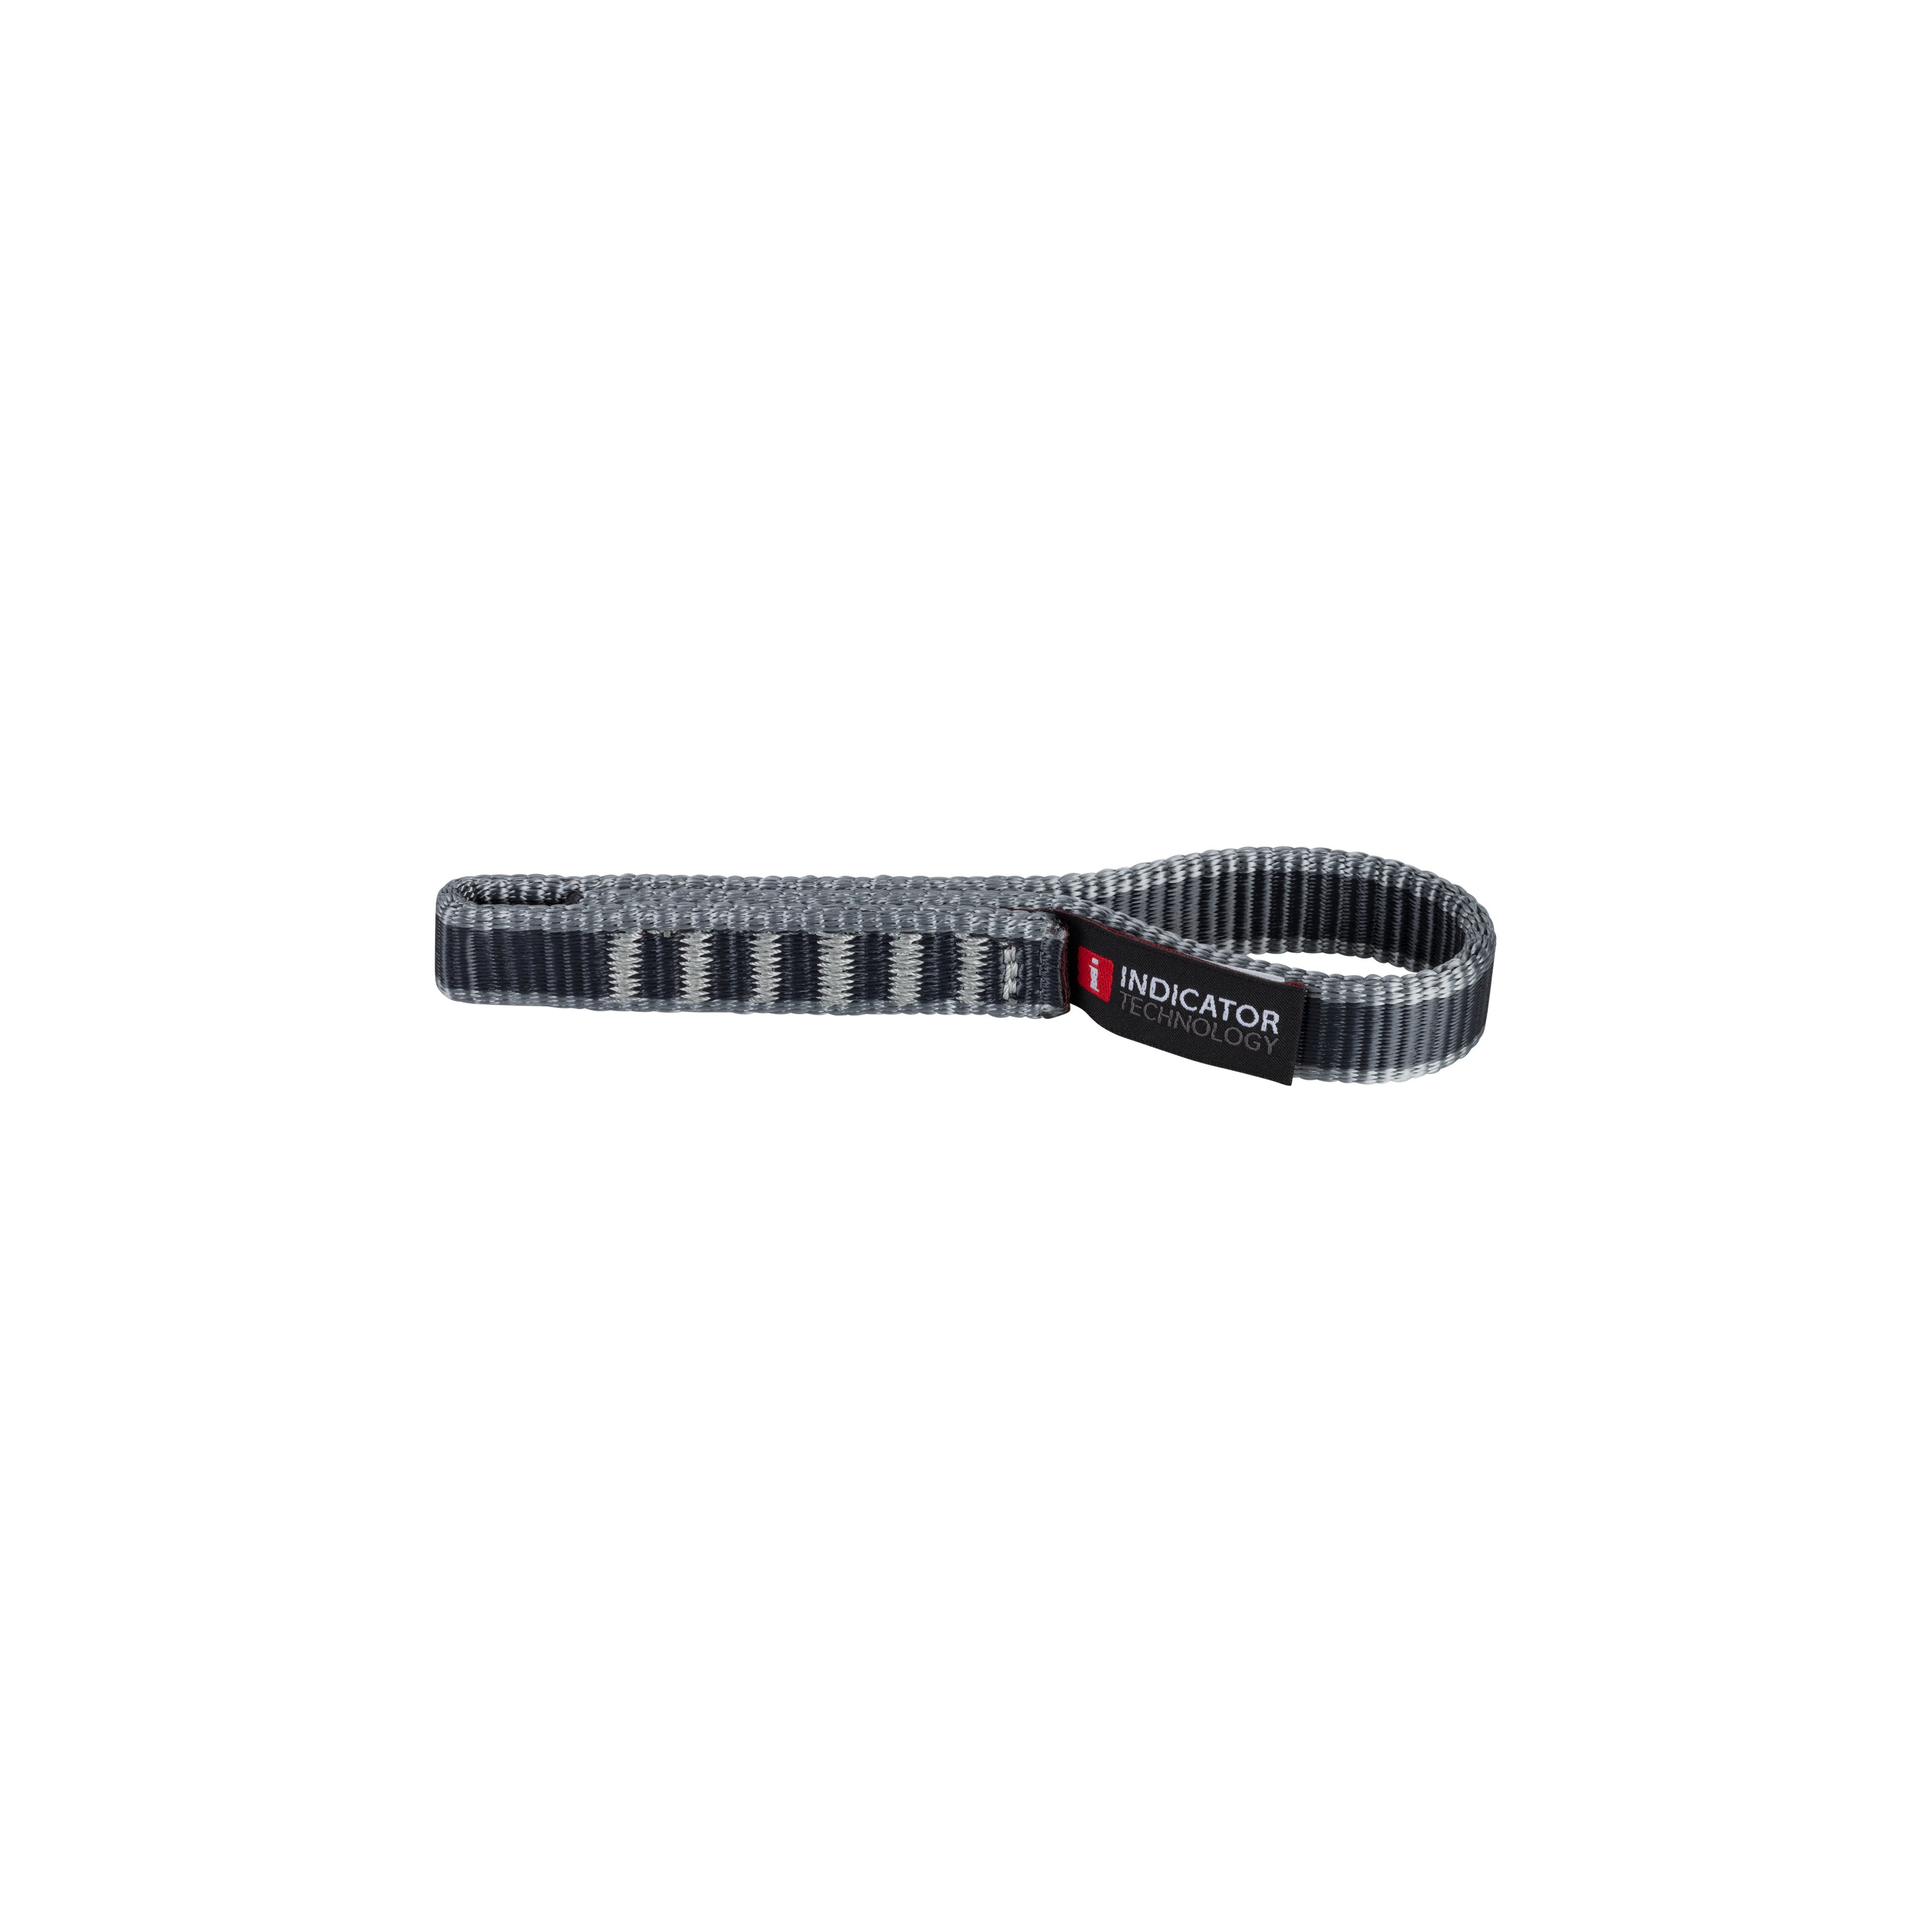 Gym Indicator Express Sling 16.0 - basalt-grey, 15 cm thumbnail